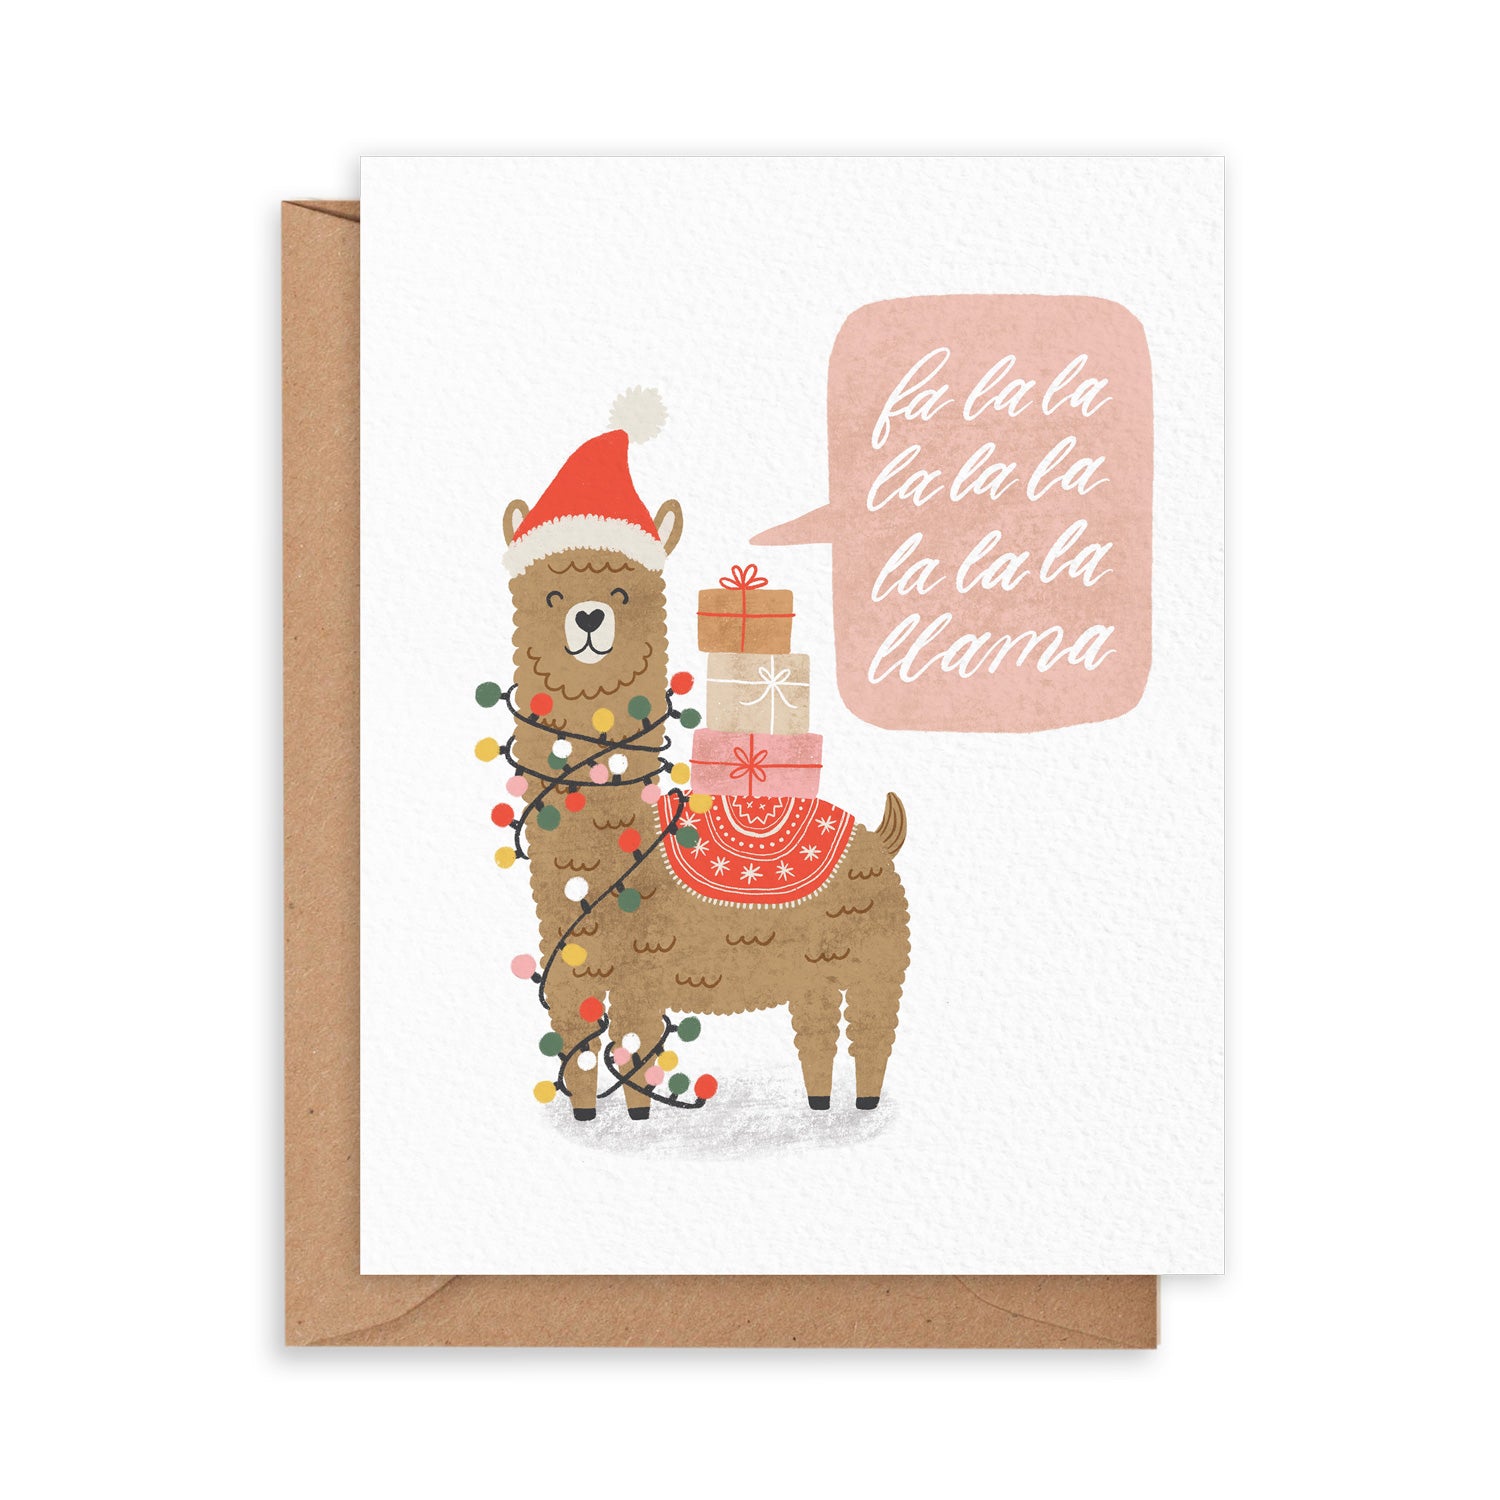 Card with a santa llama tangled up in lights carrying gifts and singing 'fa la la la llama!'